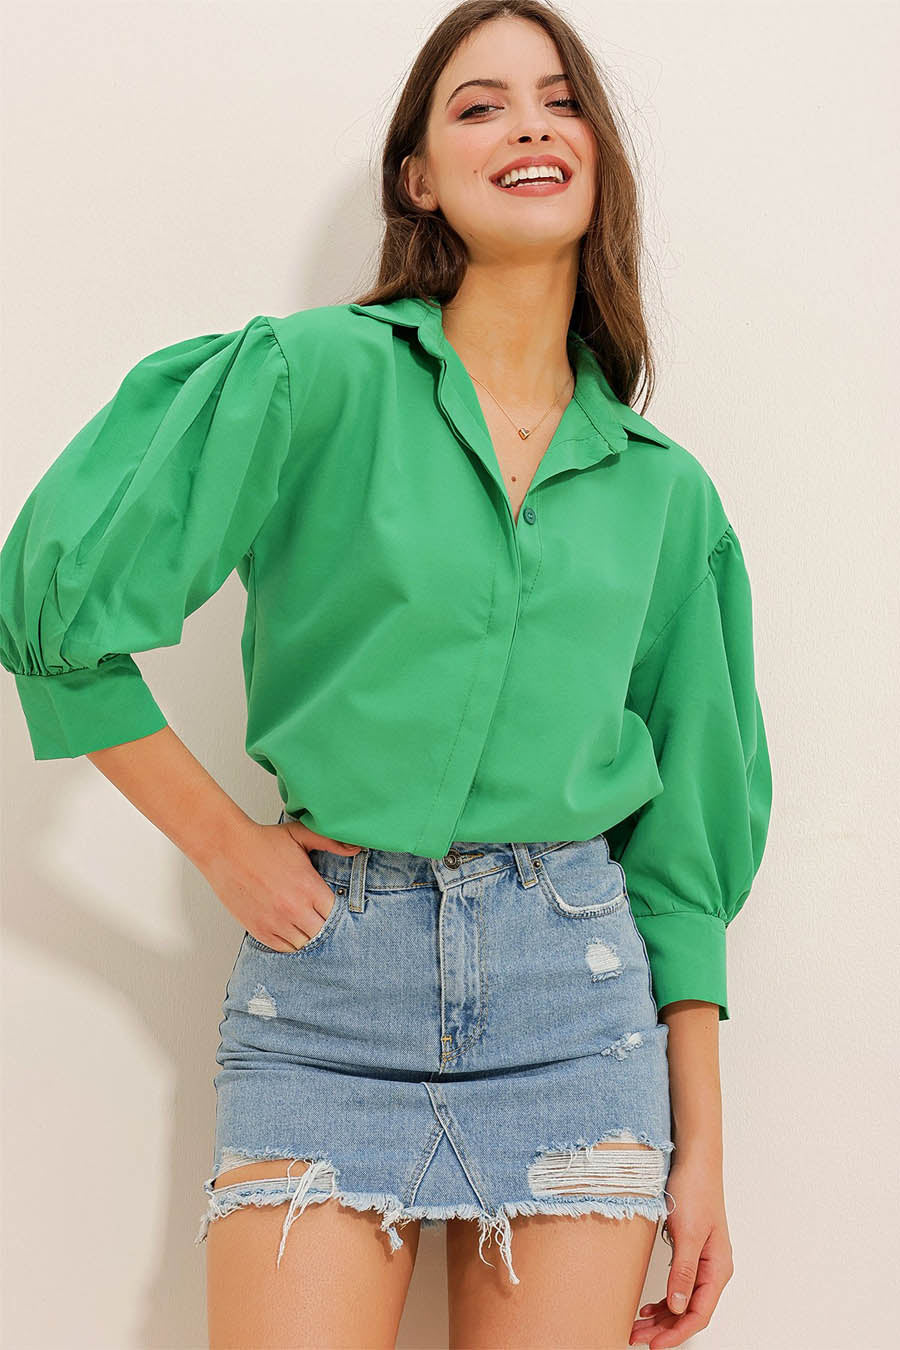 Дамска риза Maryam, Зелен 2